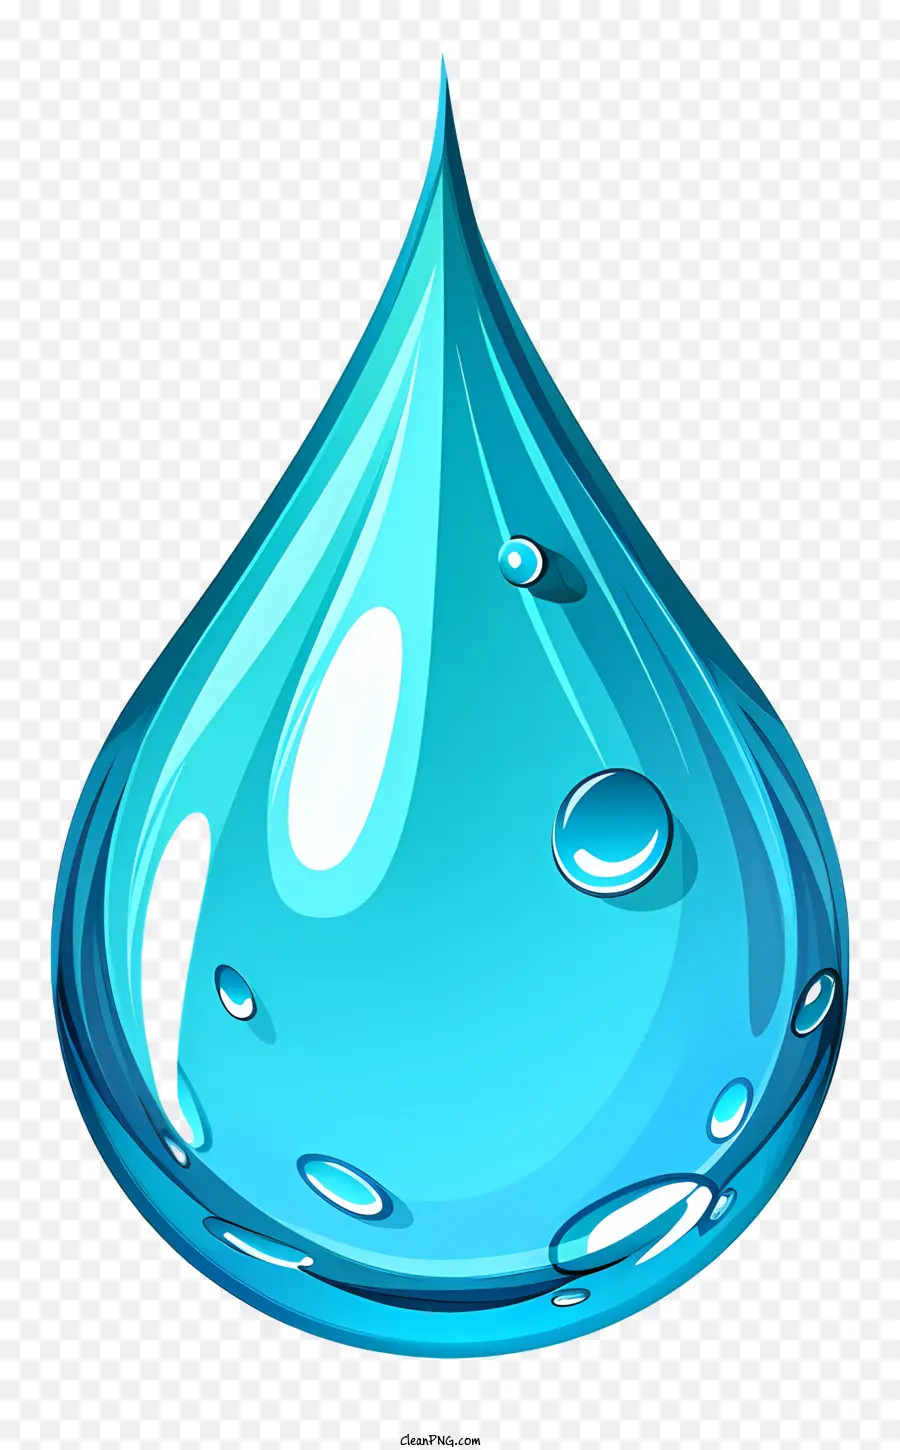 giọt nước - Cận cảnh giọt nước trong xanh, sáng bóng